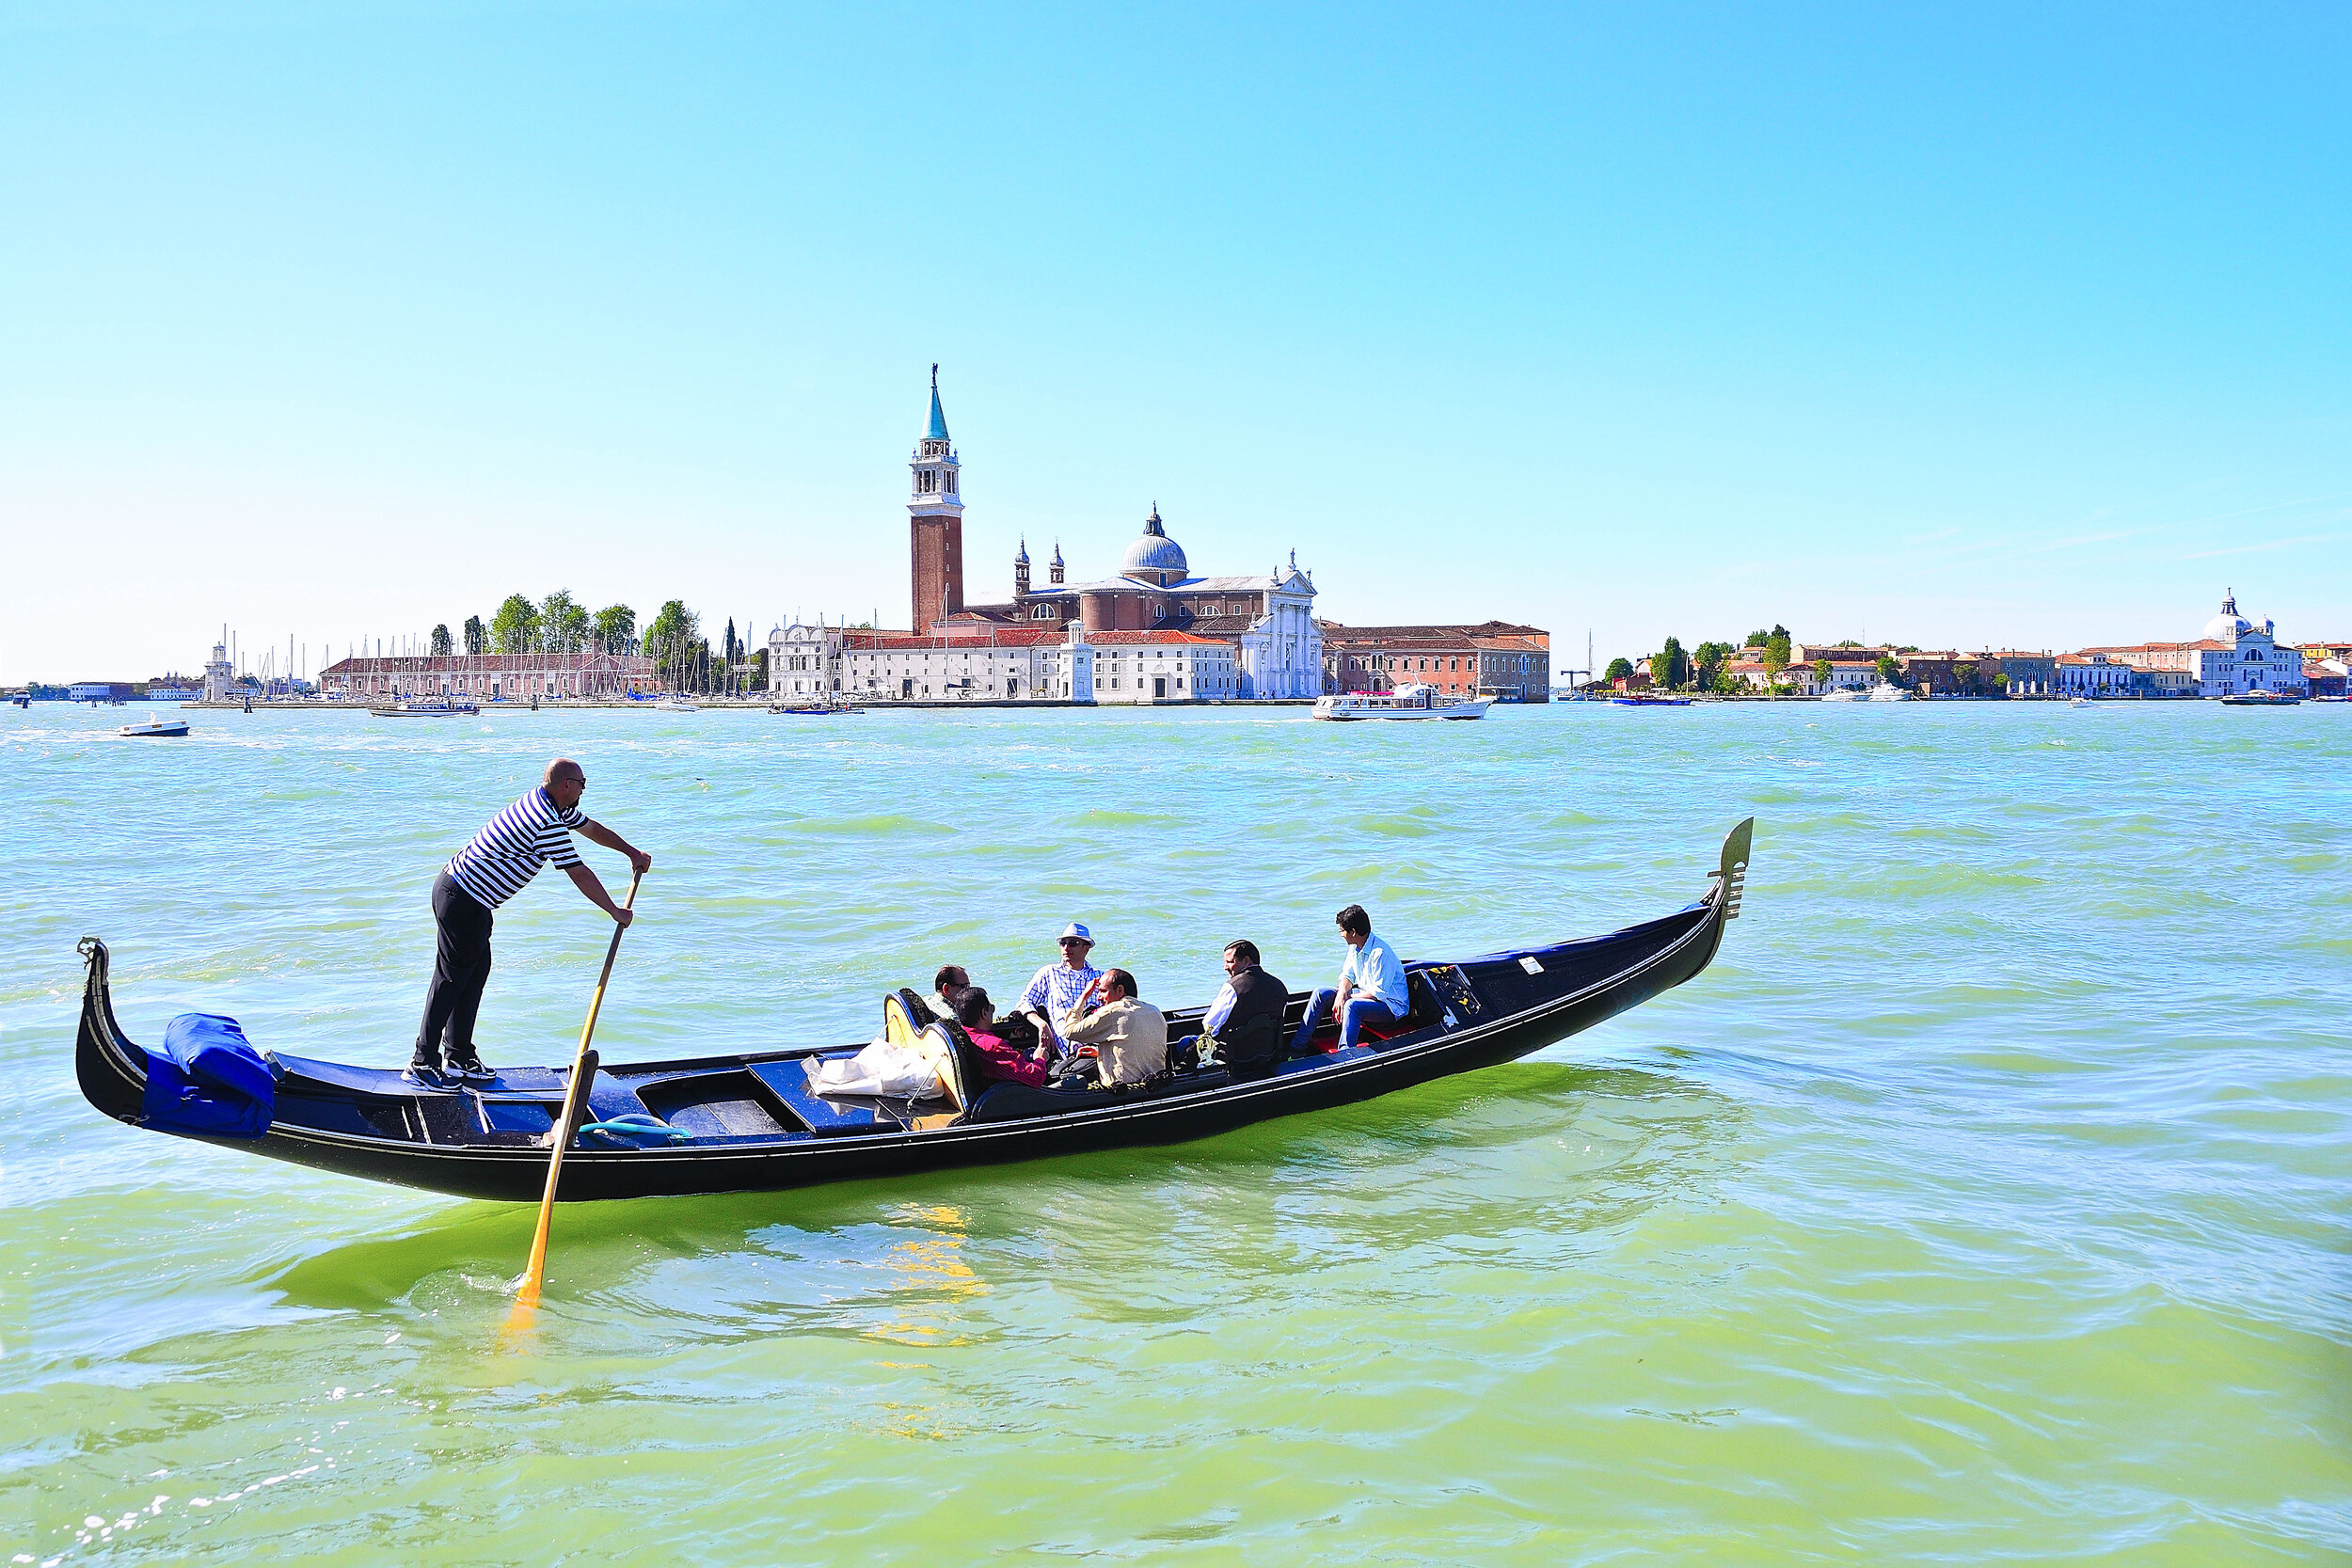 Gondola,Venice Italy.jpg